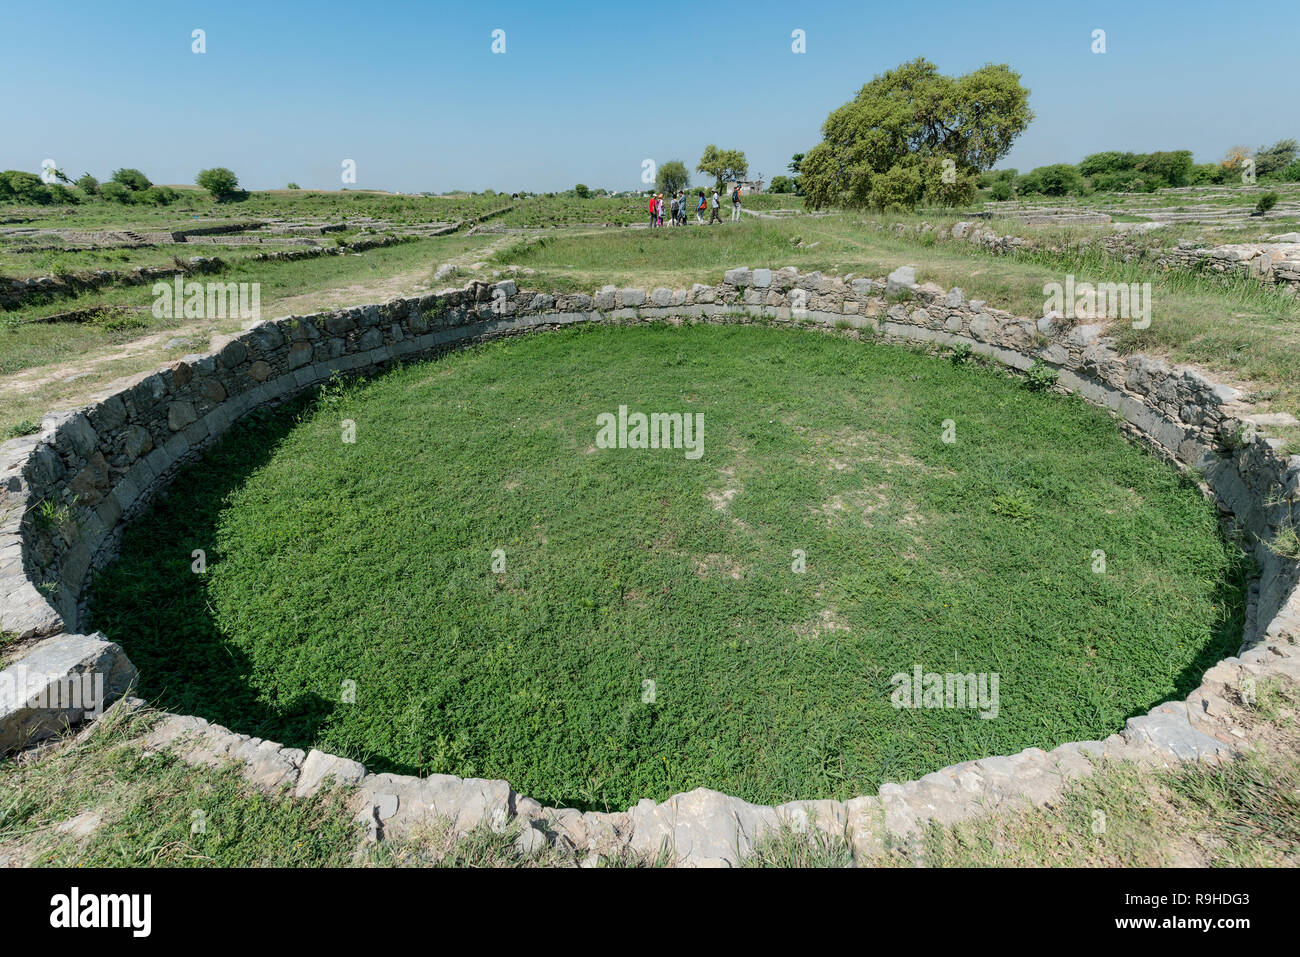 Taxila (Sirkap), sitio arqueológico, declarado Patrimonio de la Humanidad por la UNESCO.El centro histórico de la ciudad donde el Buda pasó 40 años predicando, Punjab, Pakistán. Foto de stock